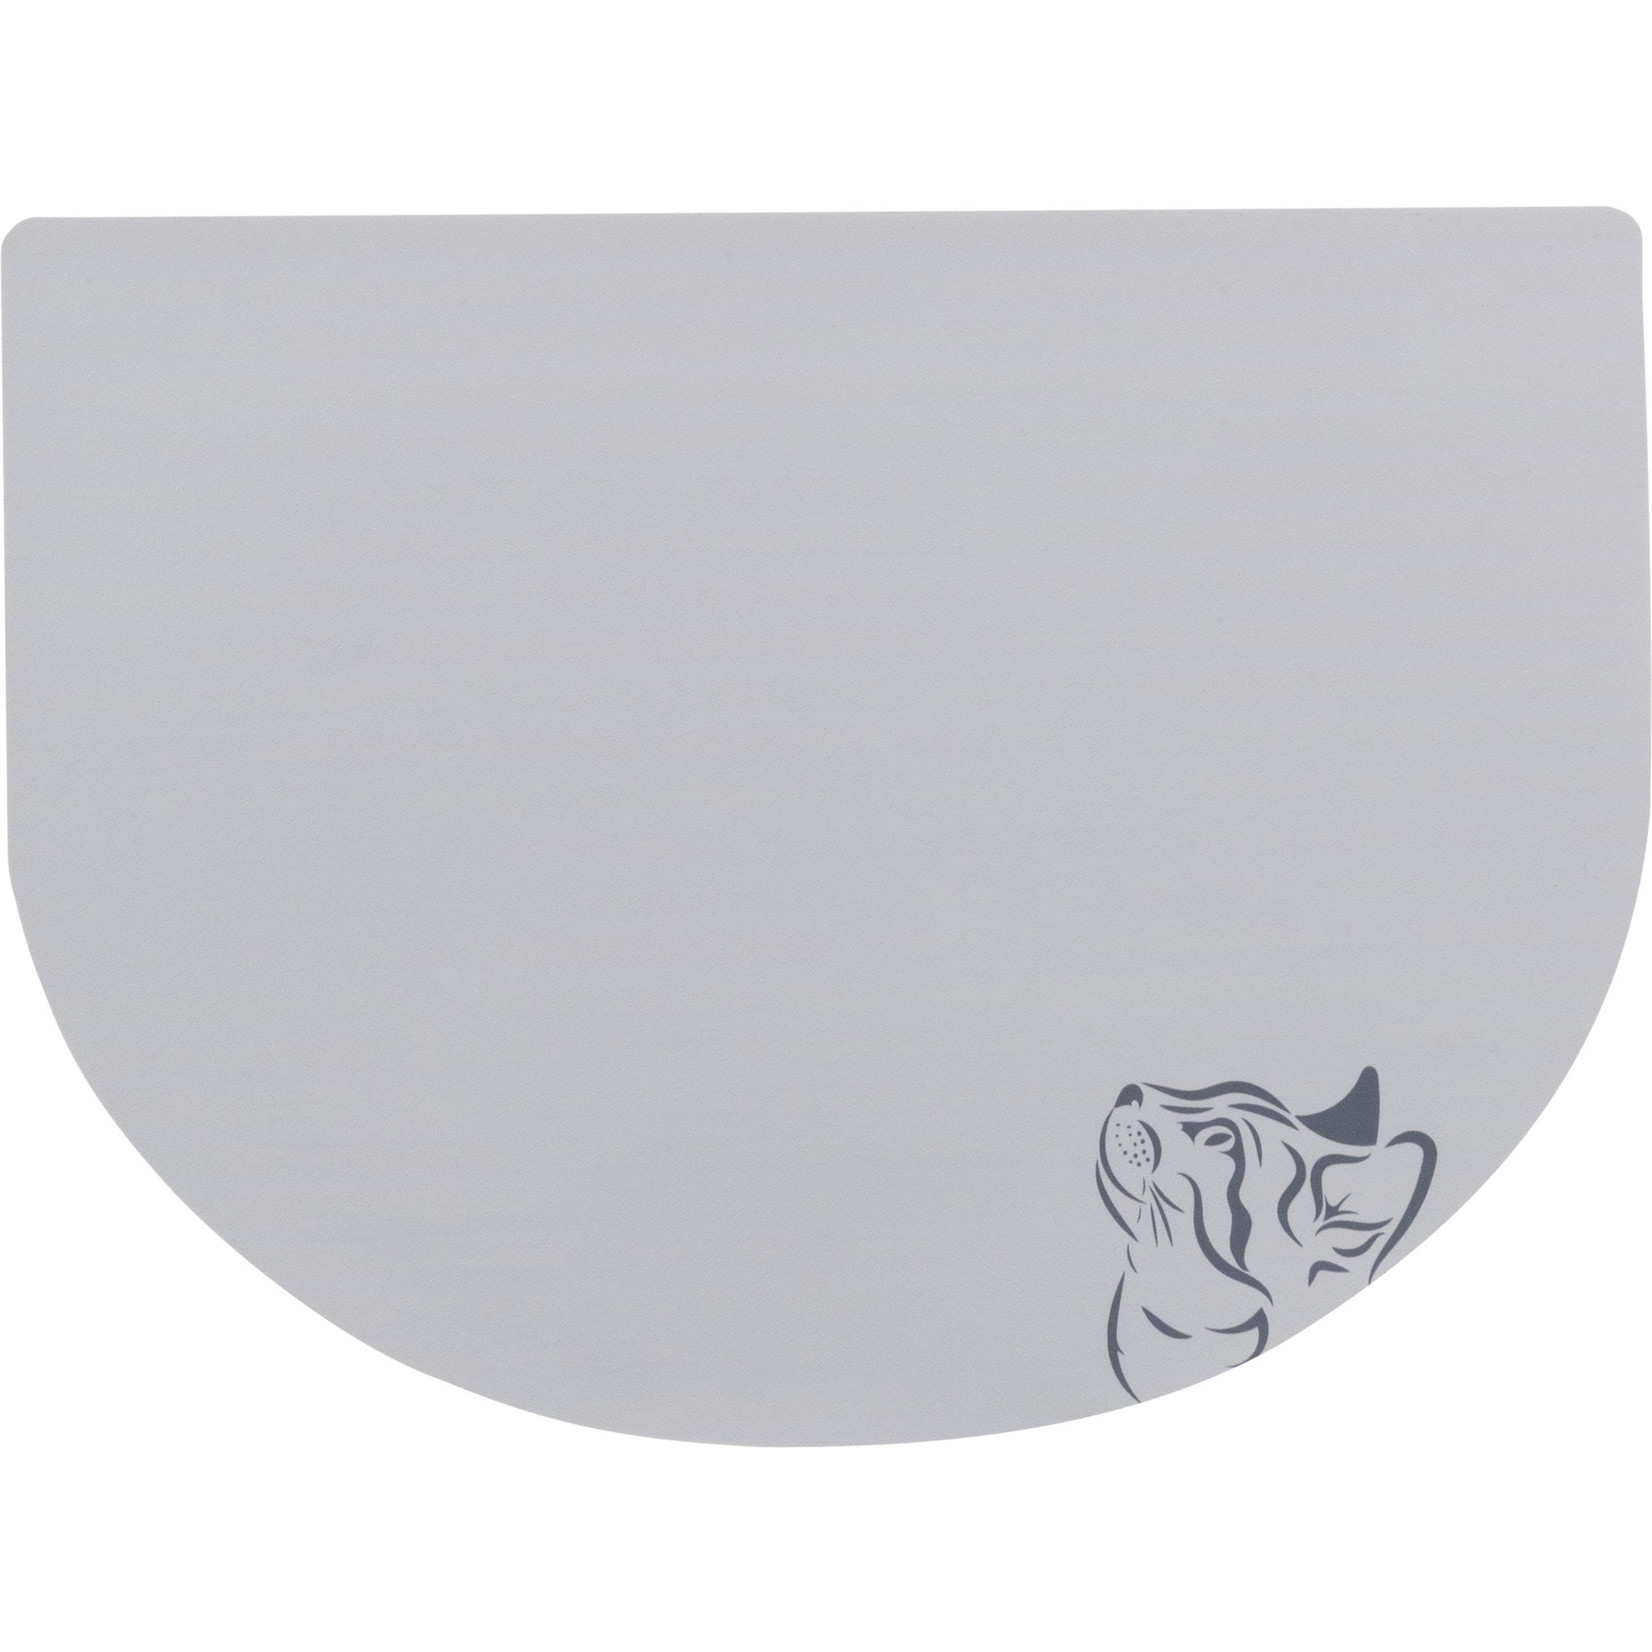 Trixie Non-Slip Plastic Cat Placemat, 43 × 28 cm